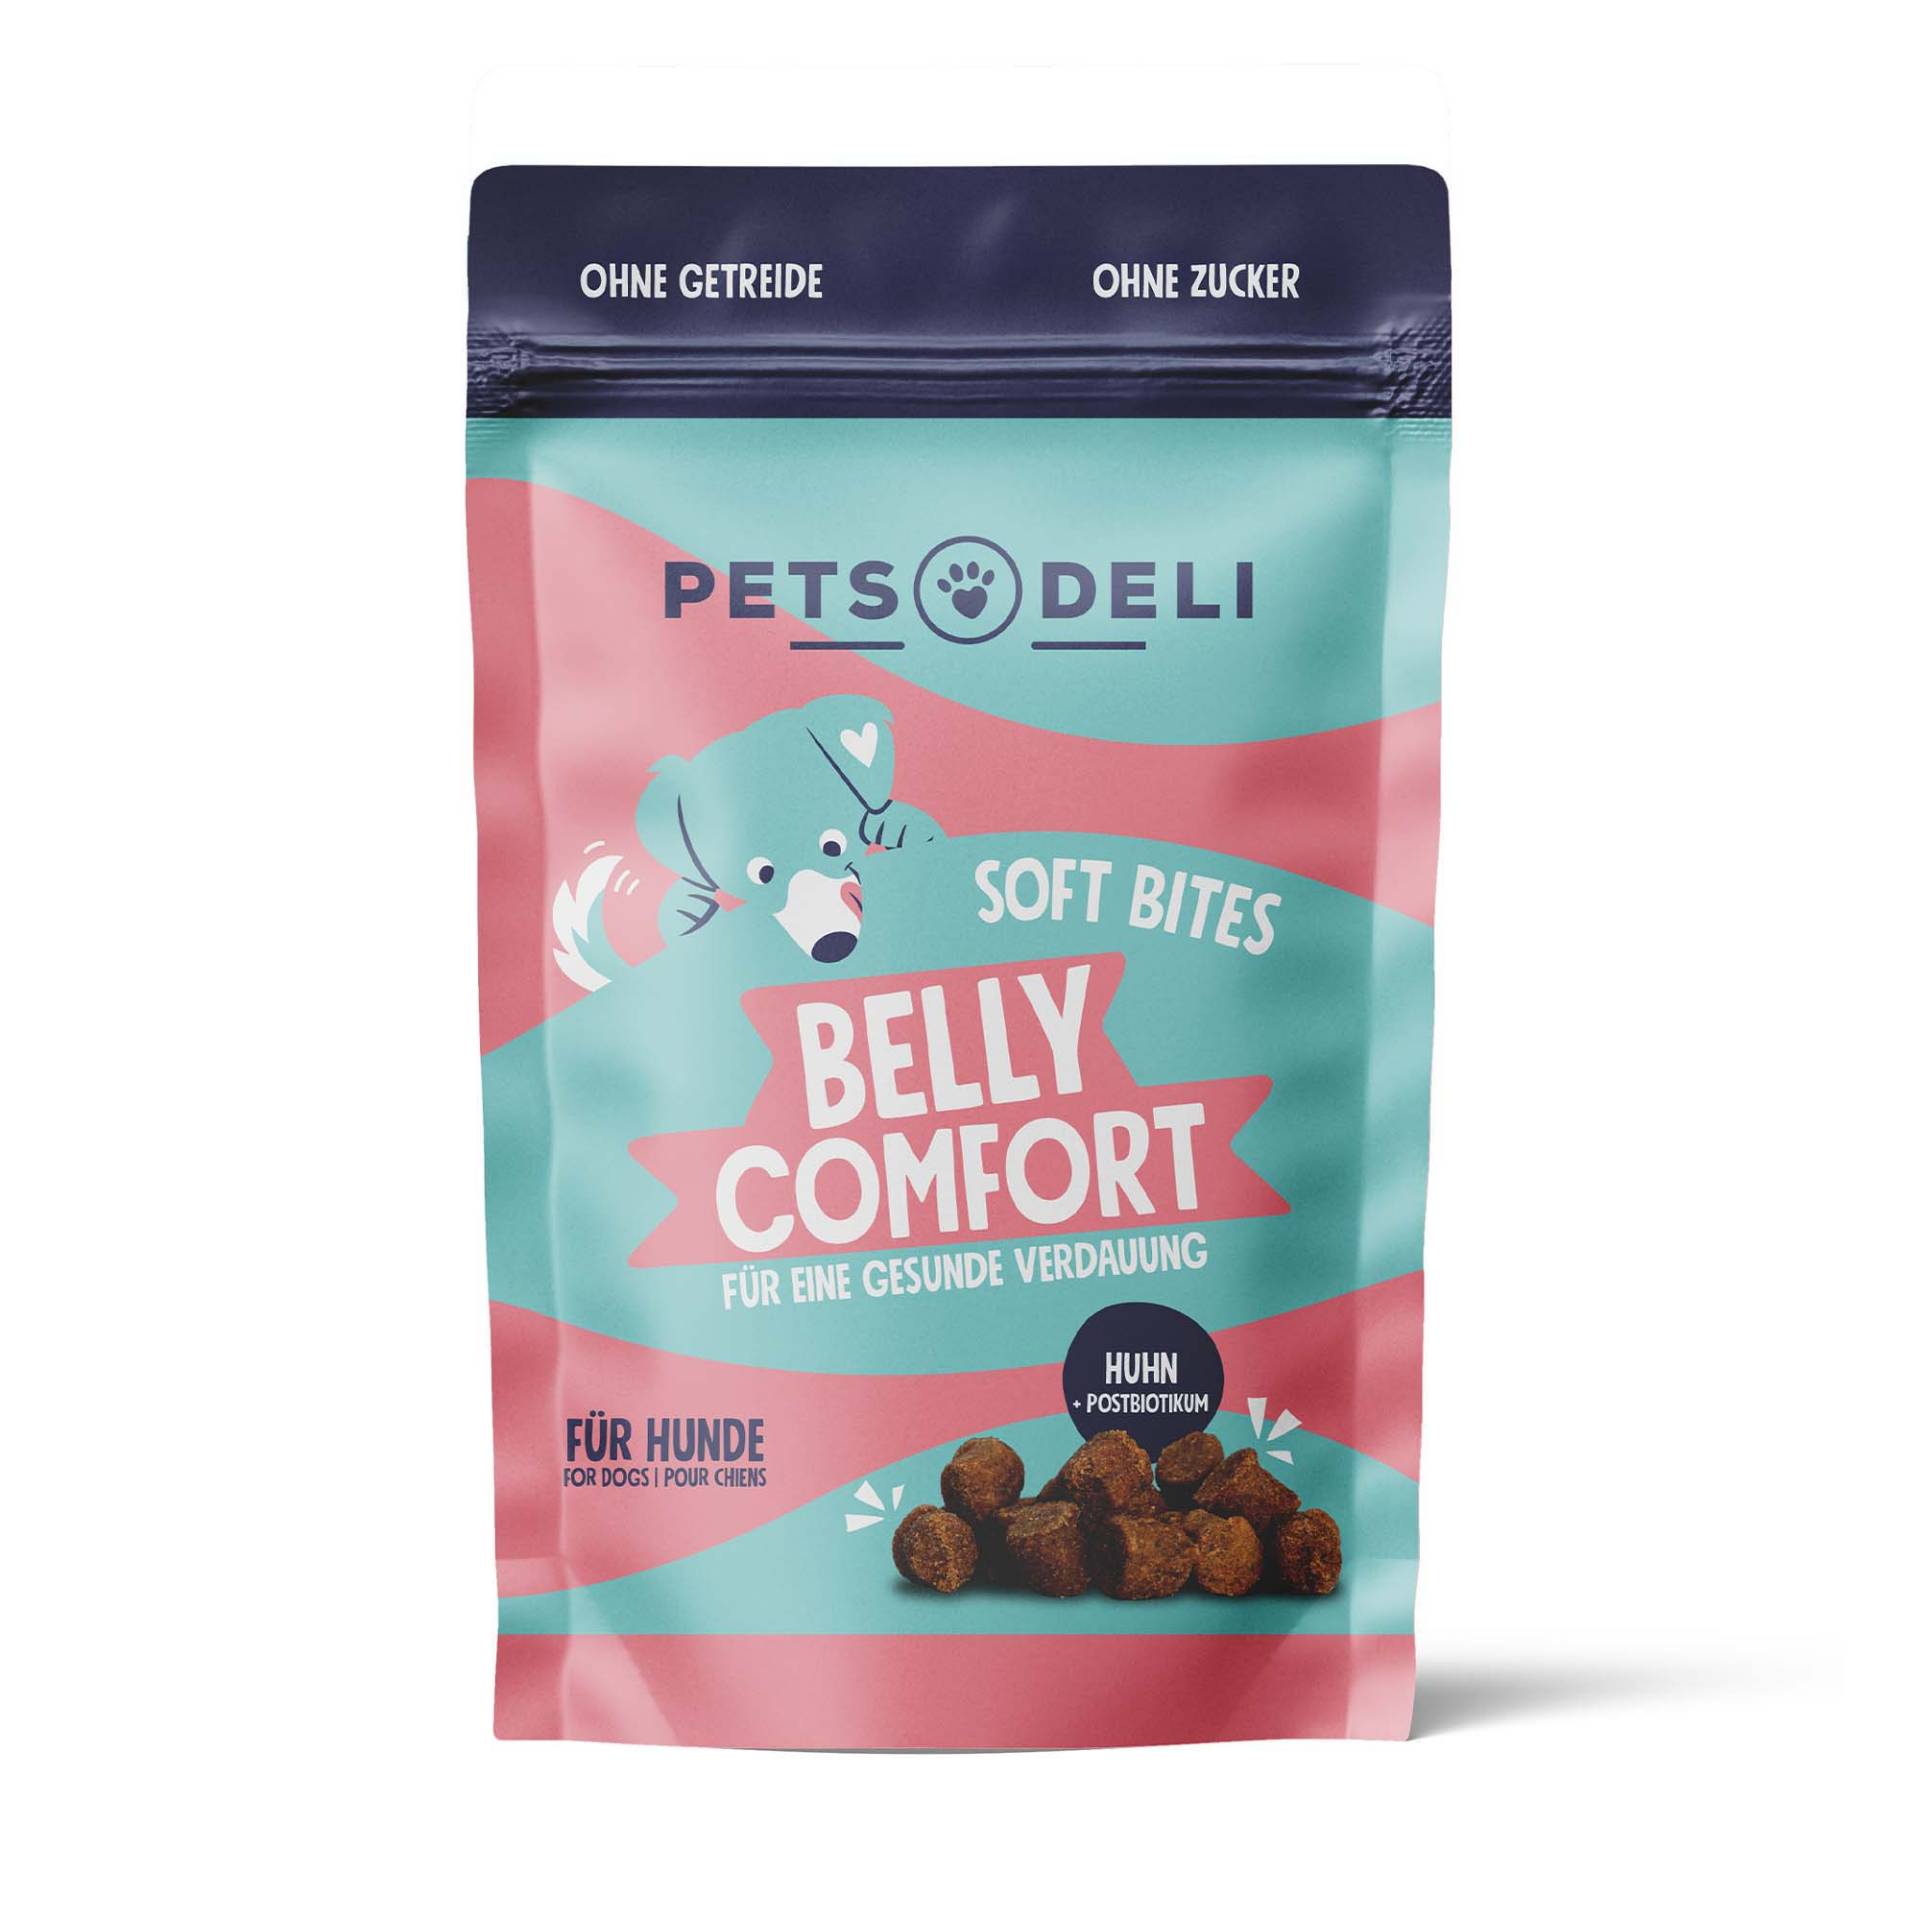 Snack Soft Bites Belly Comfort für Hunde - 3x300g von Pets Deli